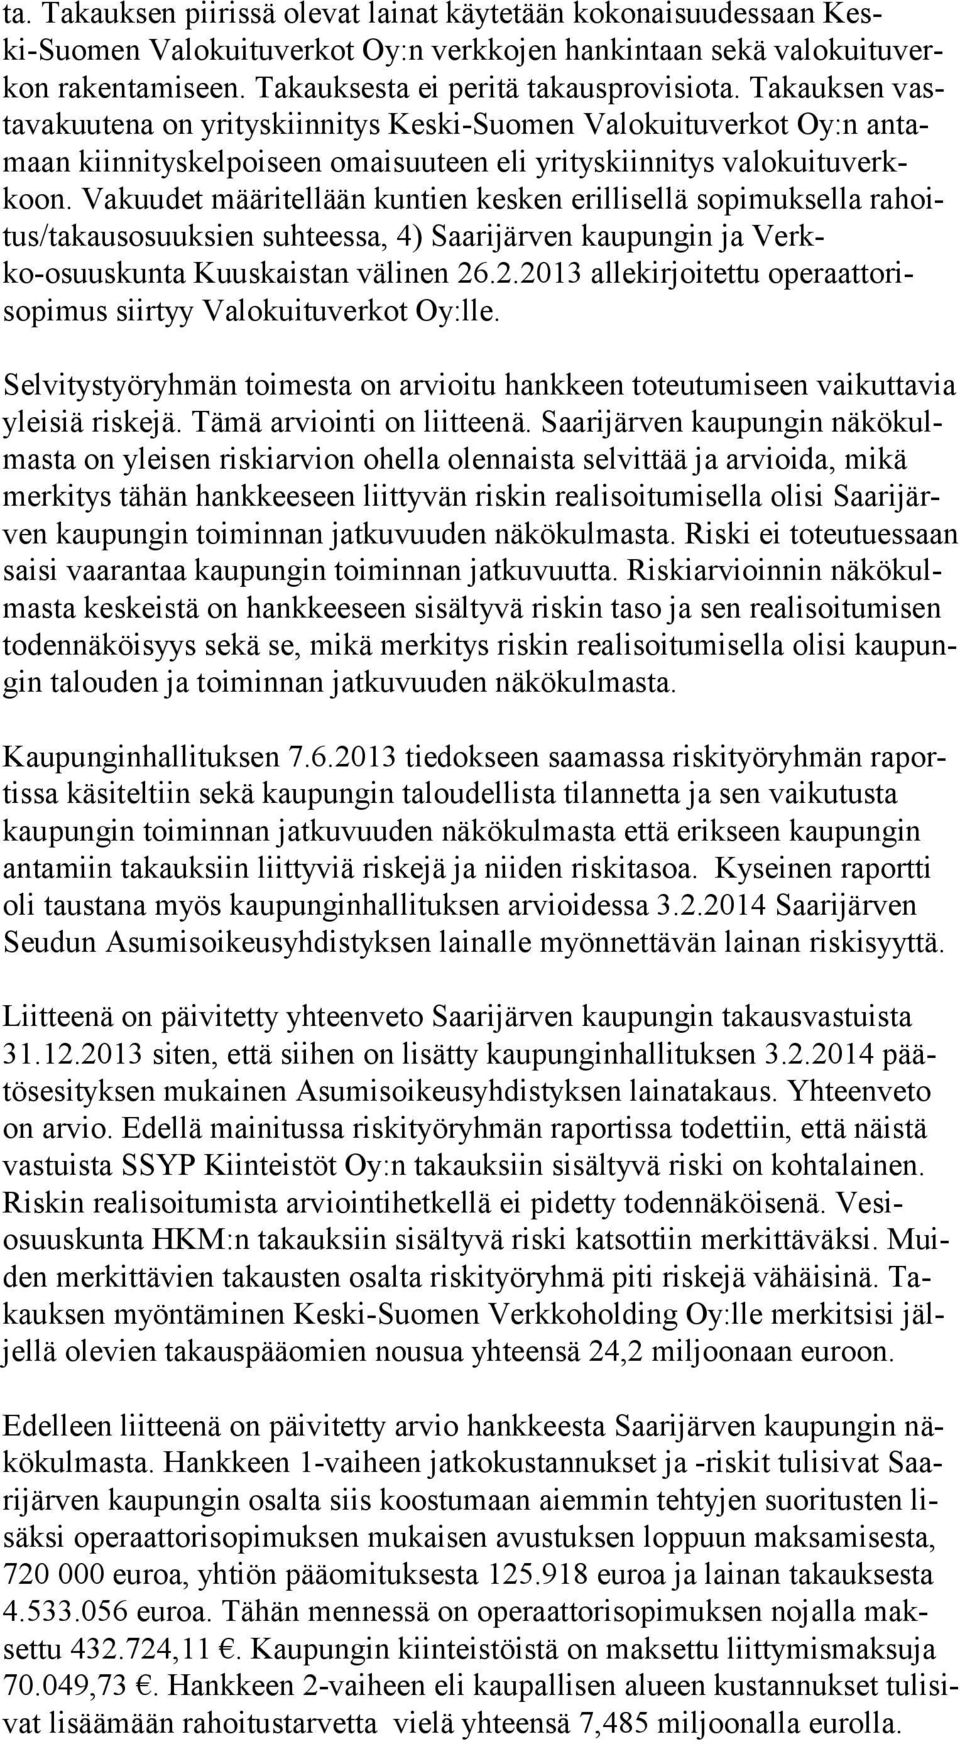 Takauksen vastava kuute na on yrityskiinnitys Keski-Suomen Valokuituverkot Oy:n an tamaan kiinnitys kelpoiseen omaisuuteen eli yrityskiinnitys valokuituverkkoon.